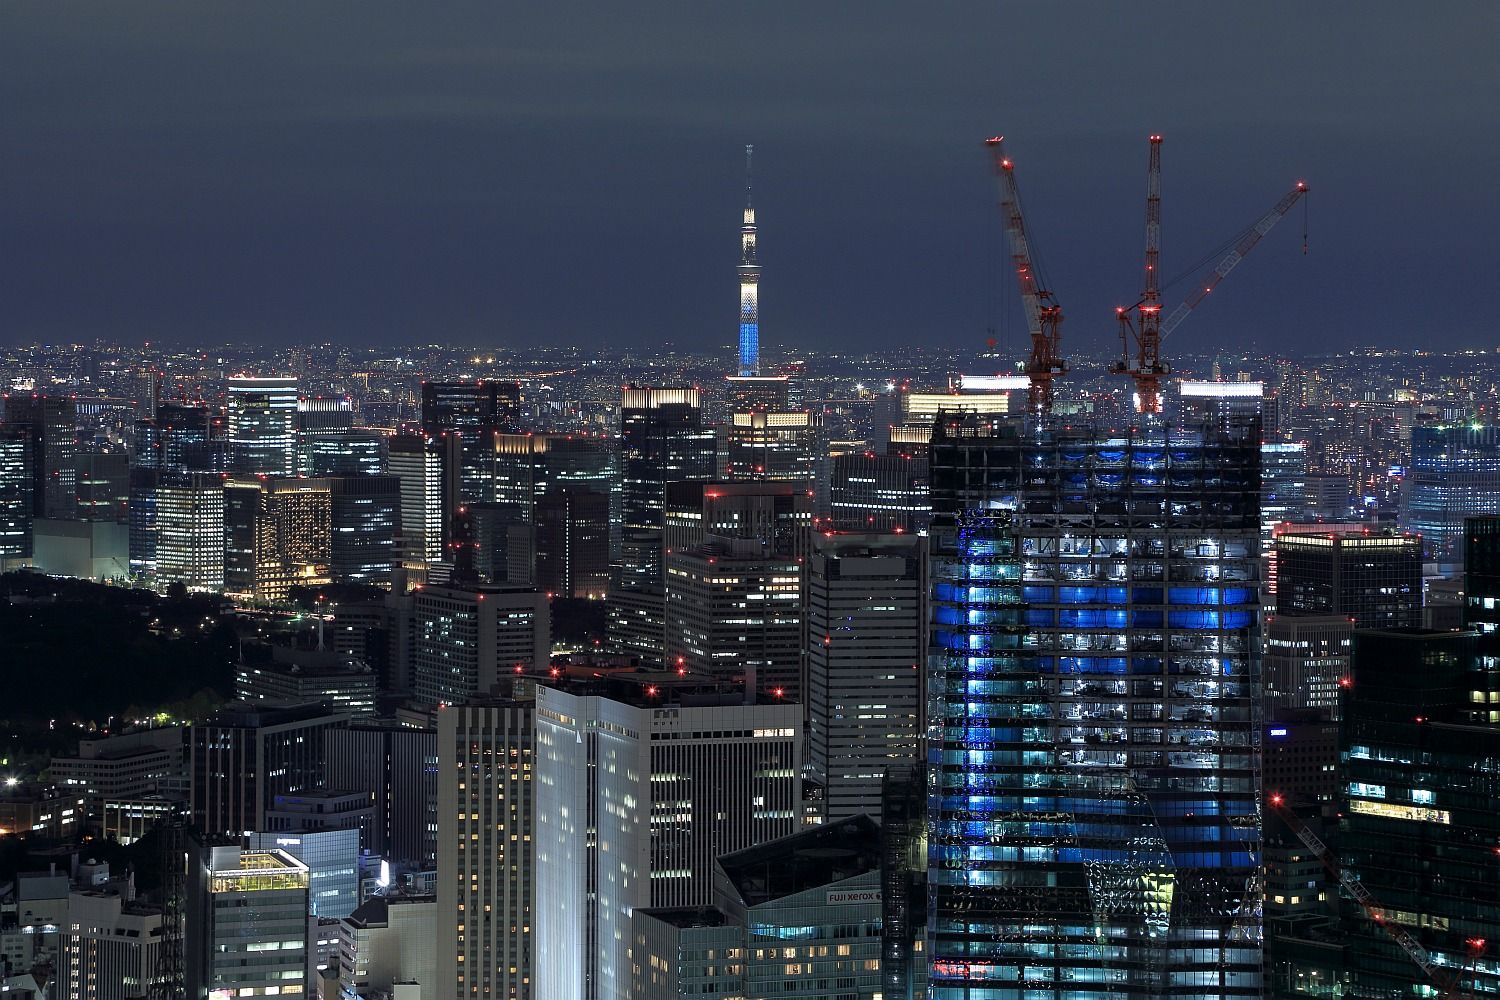 六本木ヒルズから見た東京スカイツリー夜景 15年10月31日 東京スカイツリー定点観測所